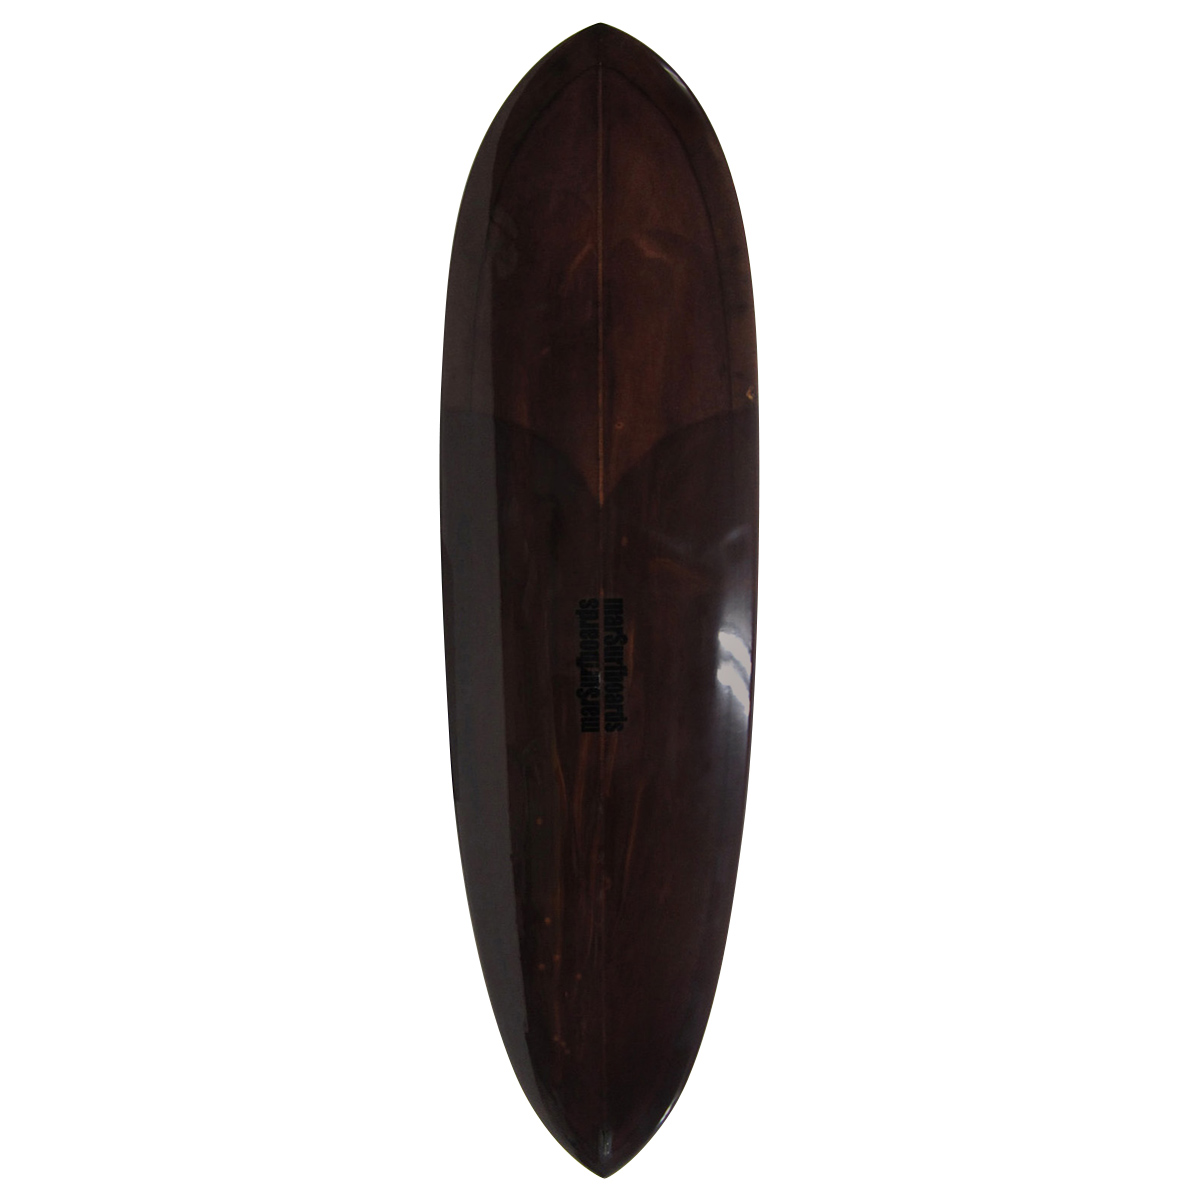  / MAR SURFBOARDS / 7`0 Standard Mini Malibu